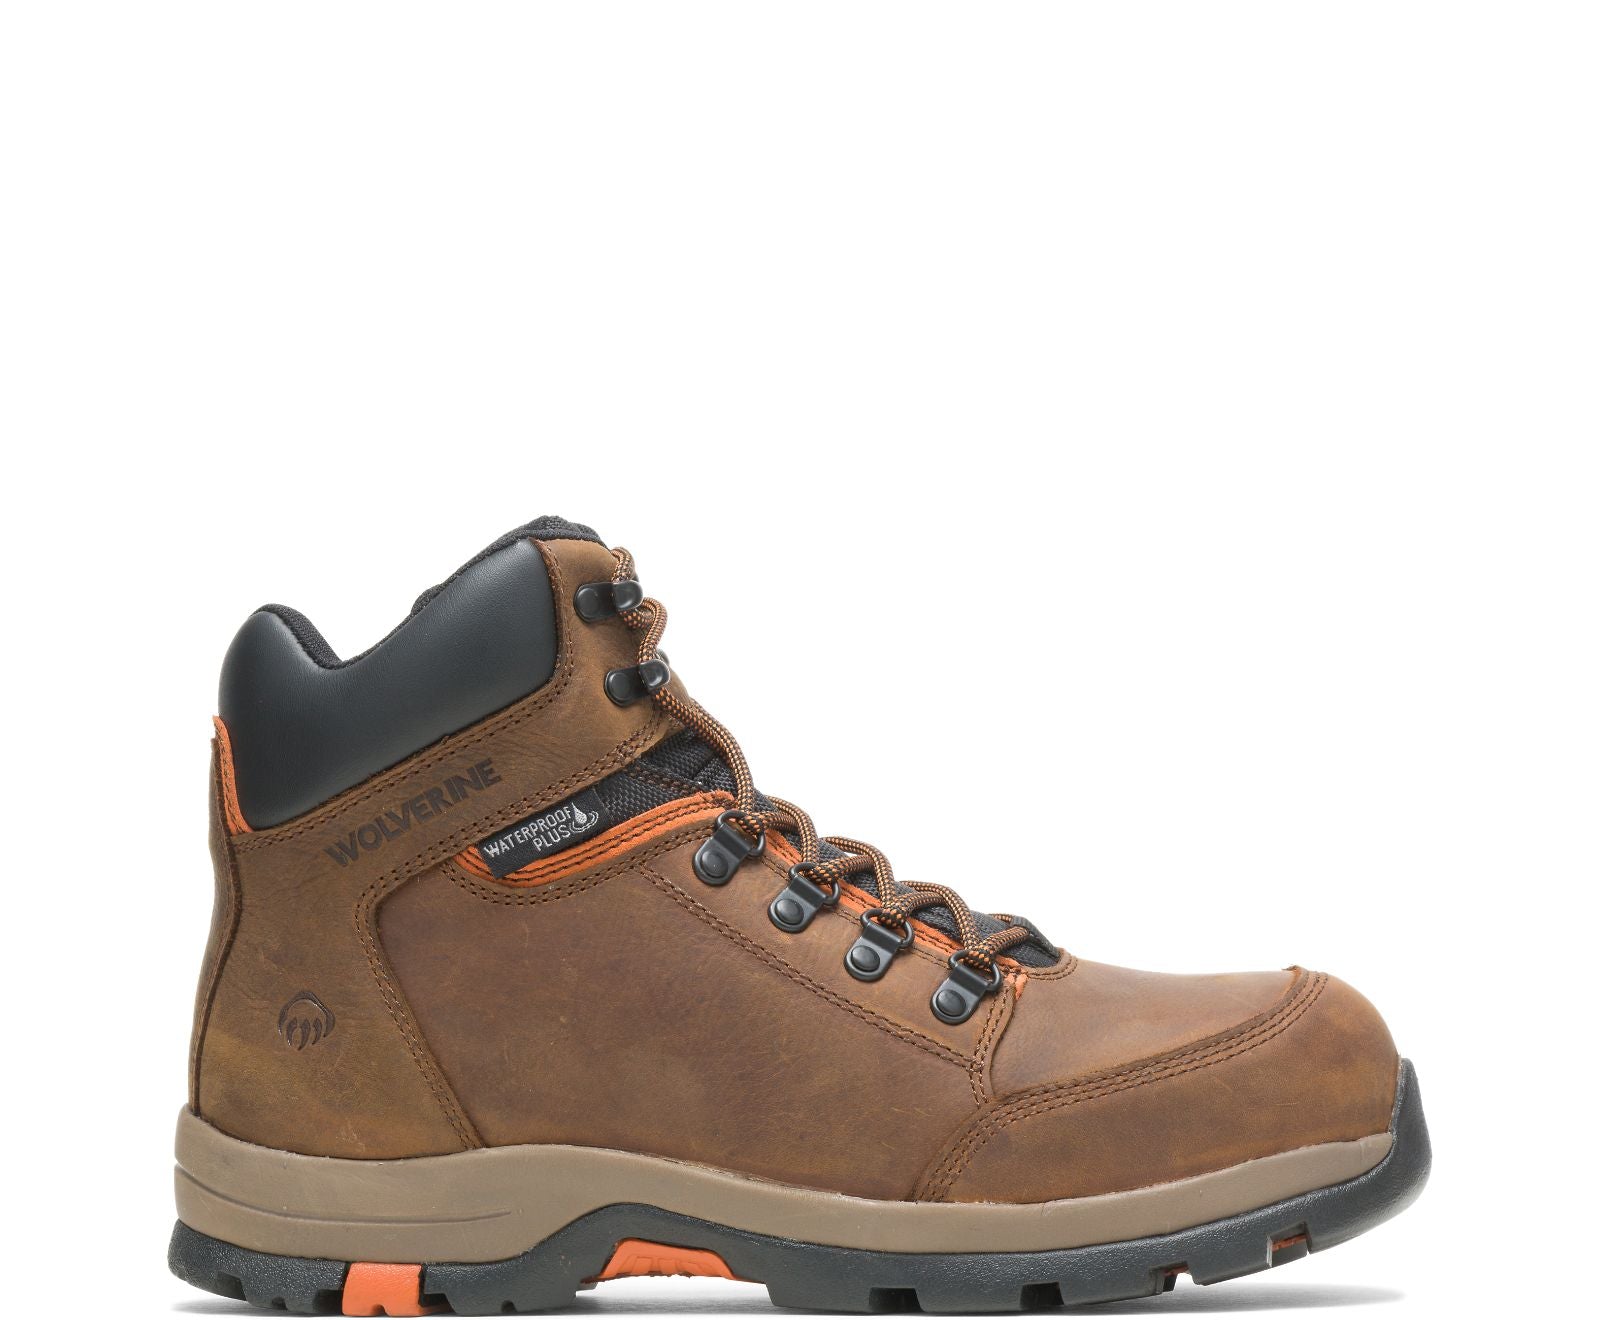 Wolverine 211043 6 Inch Brown Waterproof Steel Toe Boot (Brown)